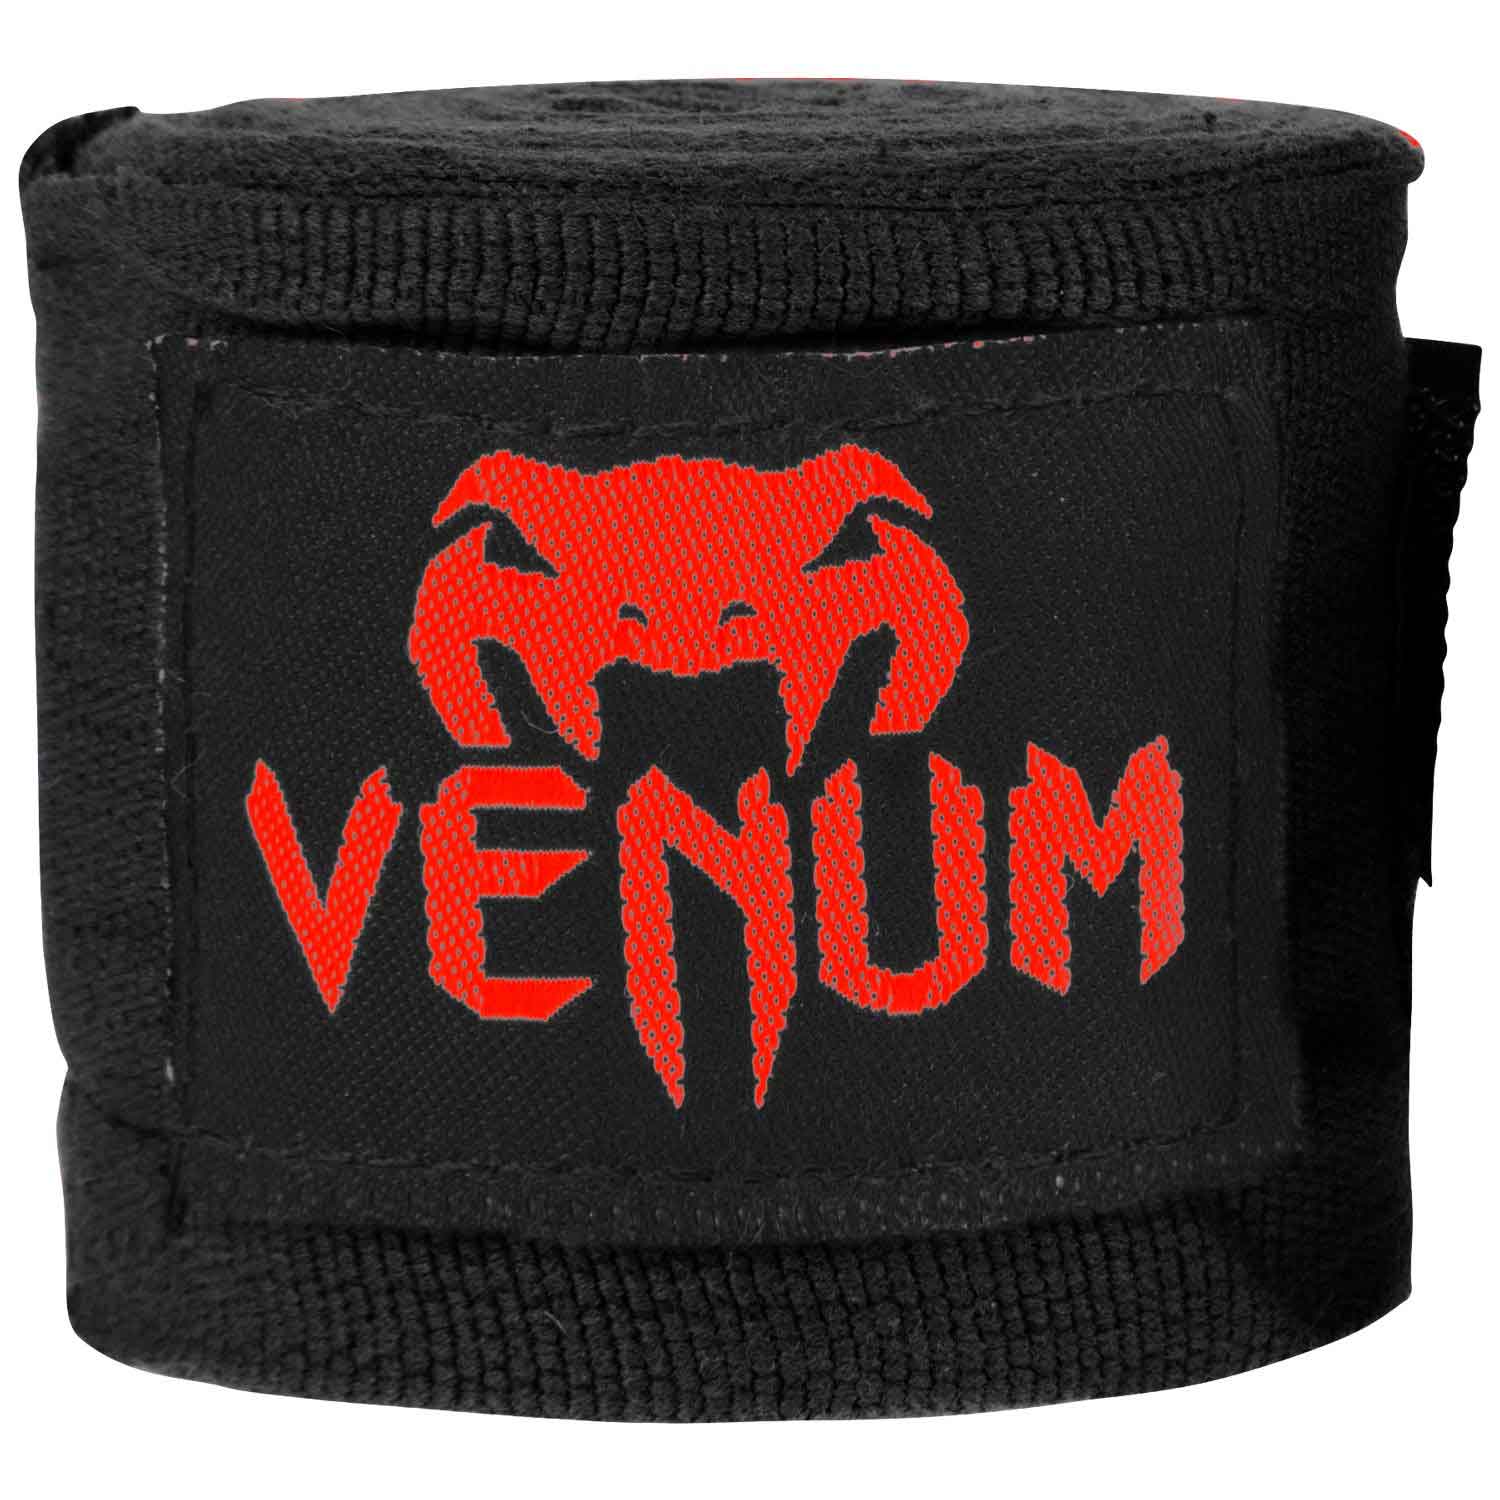 VENUM／ヴェナム アクセサリー KONTACT BOXING HANDWRAPS／コンタクト ボクシング ハンドラップ（バンテージ）レッドデビル  VENUM - 格闘技グッズ用品＆ウェアショップトライファイト